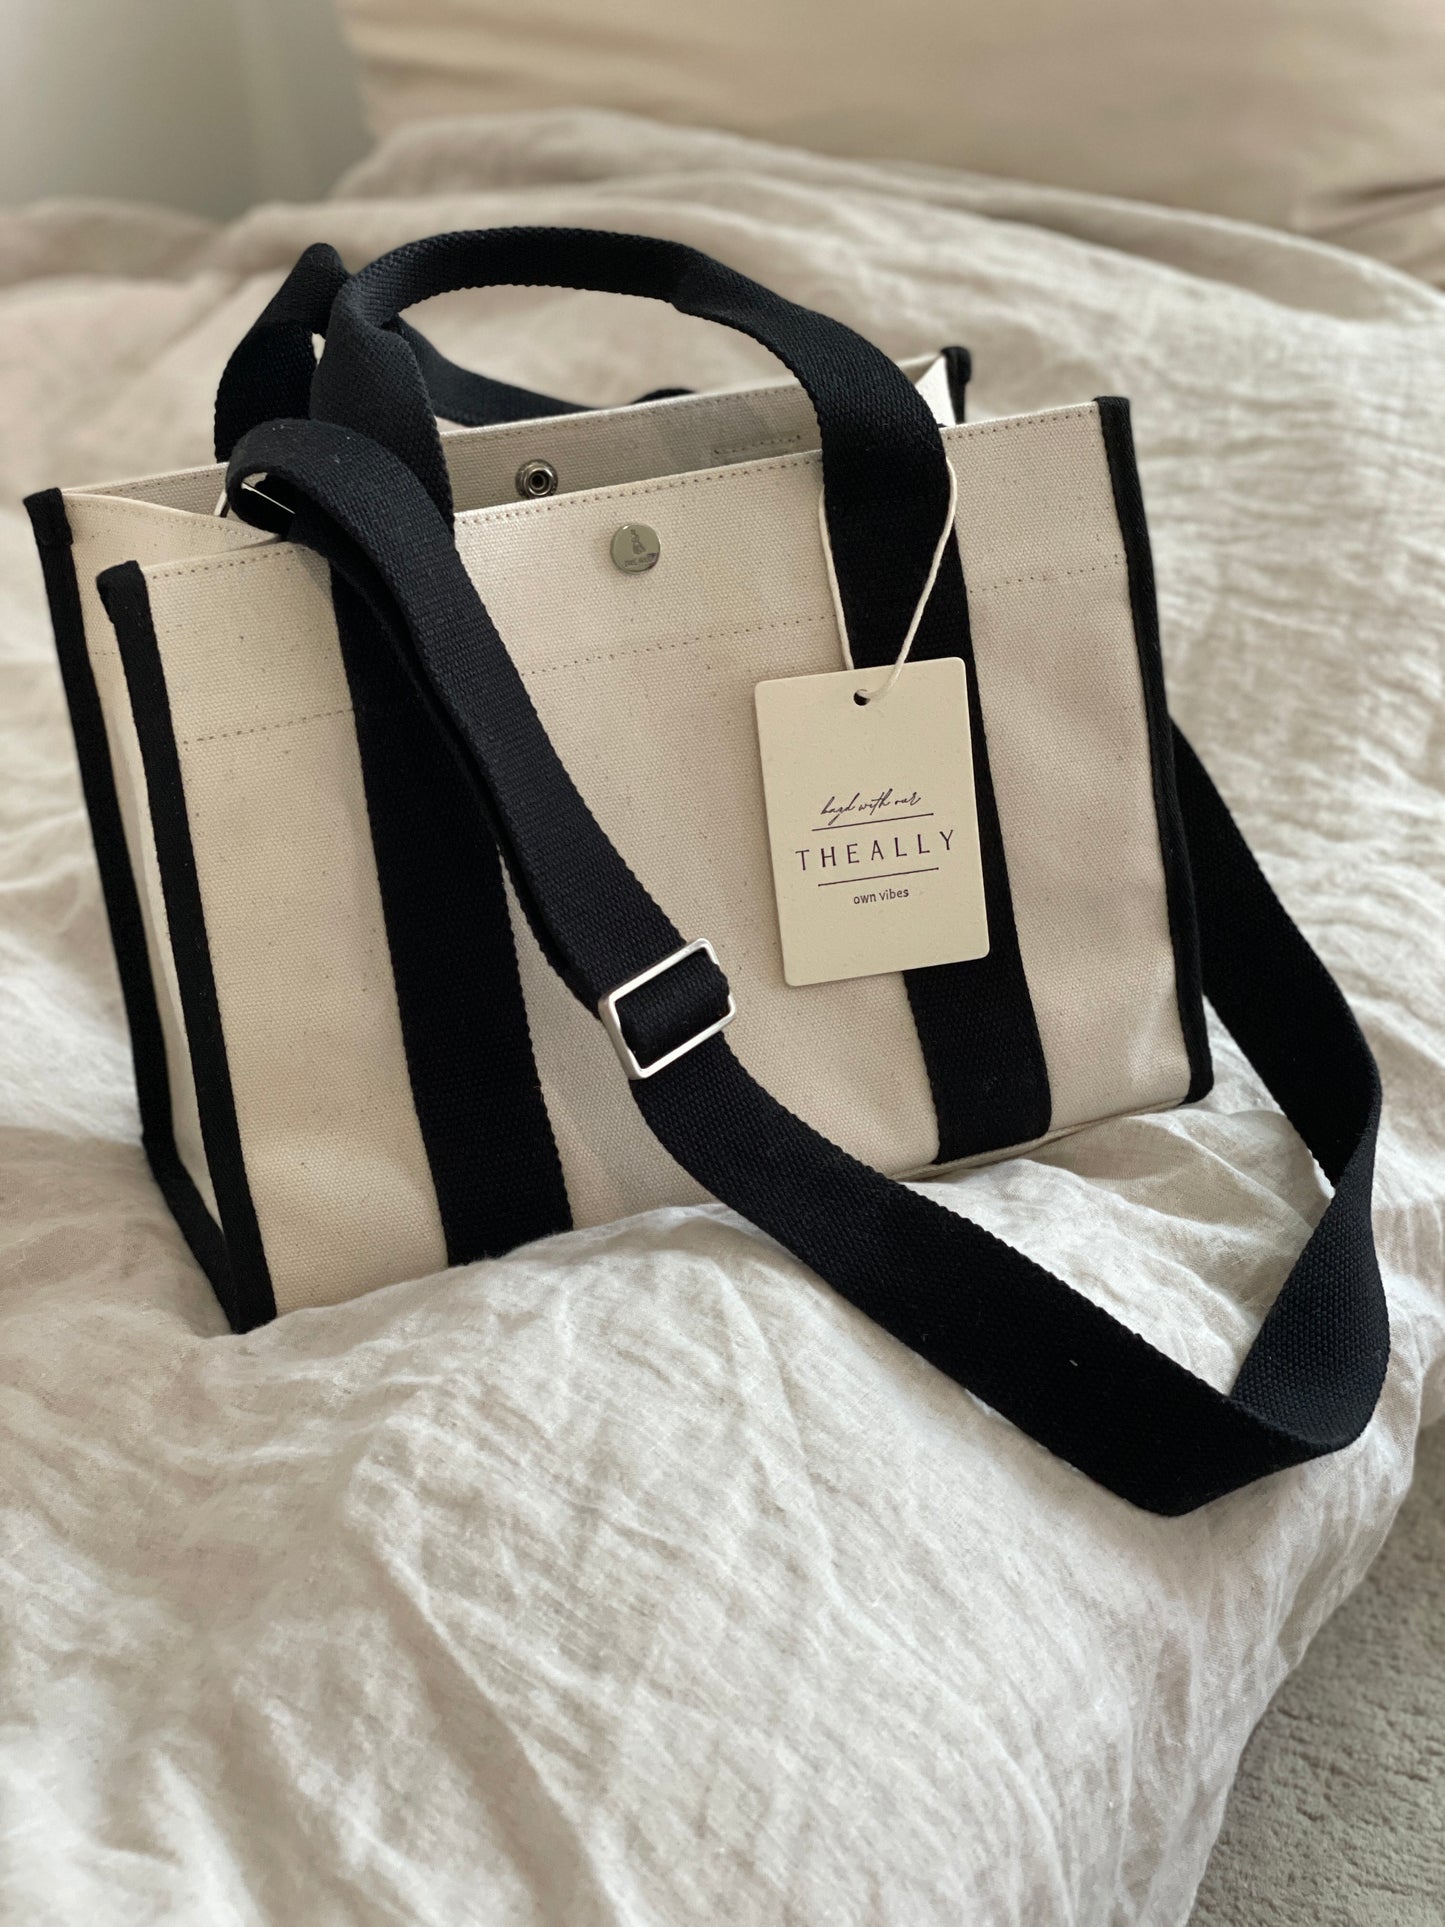 韓國The Ally - Luna Bag (附送內袋)